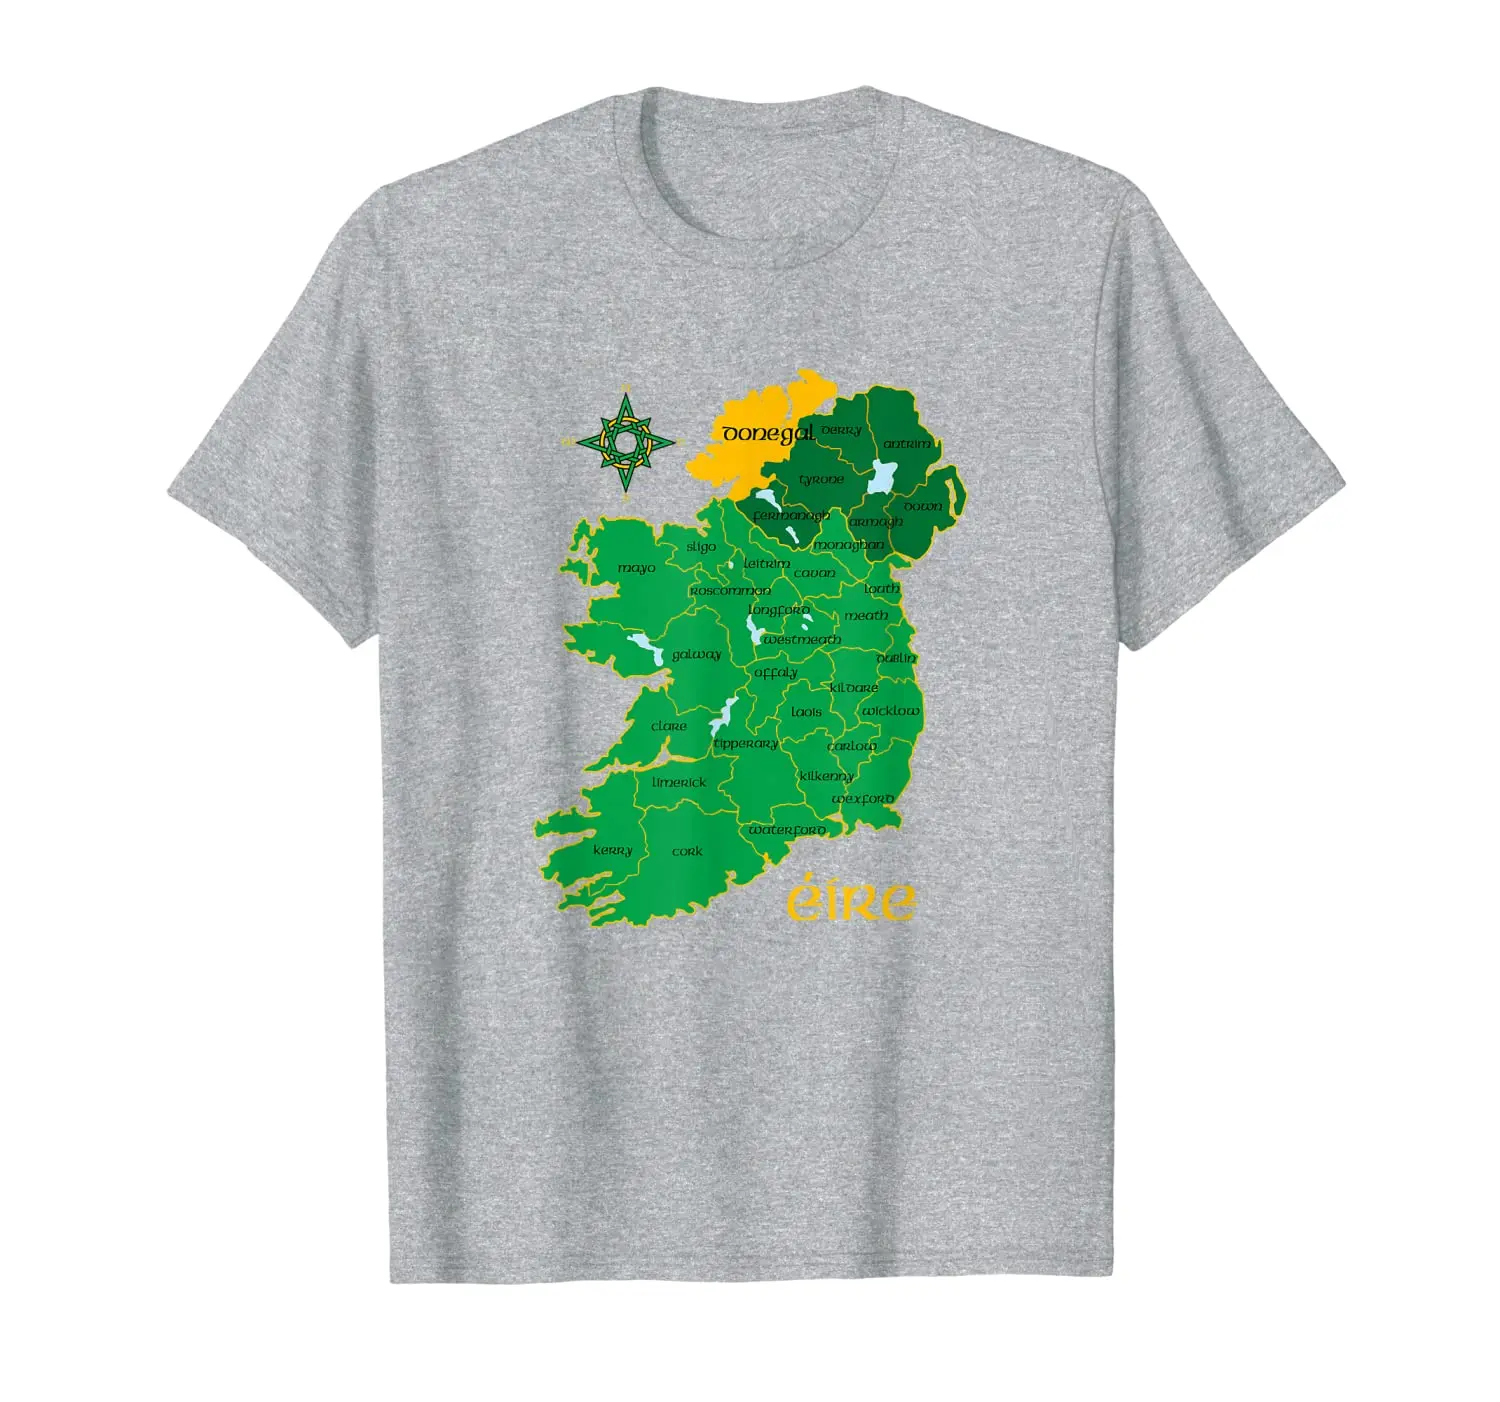 

Donegal Ireland T Shirt Irish County Map Eire Irish Travel